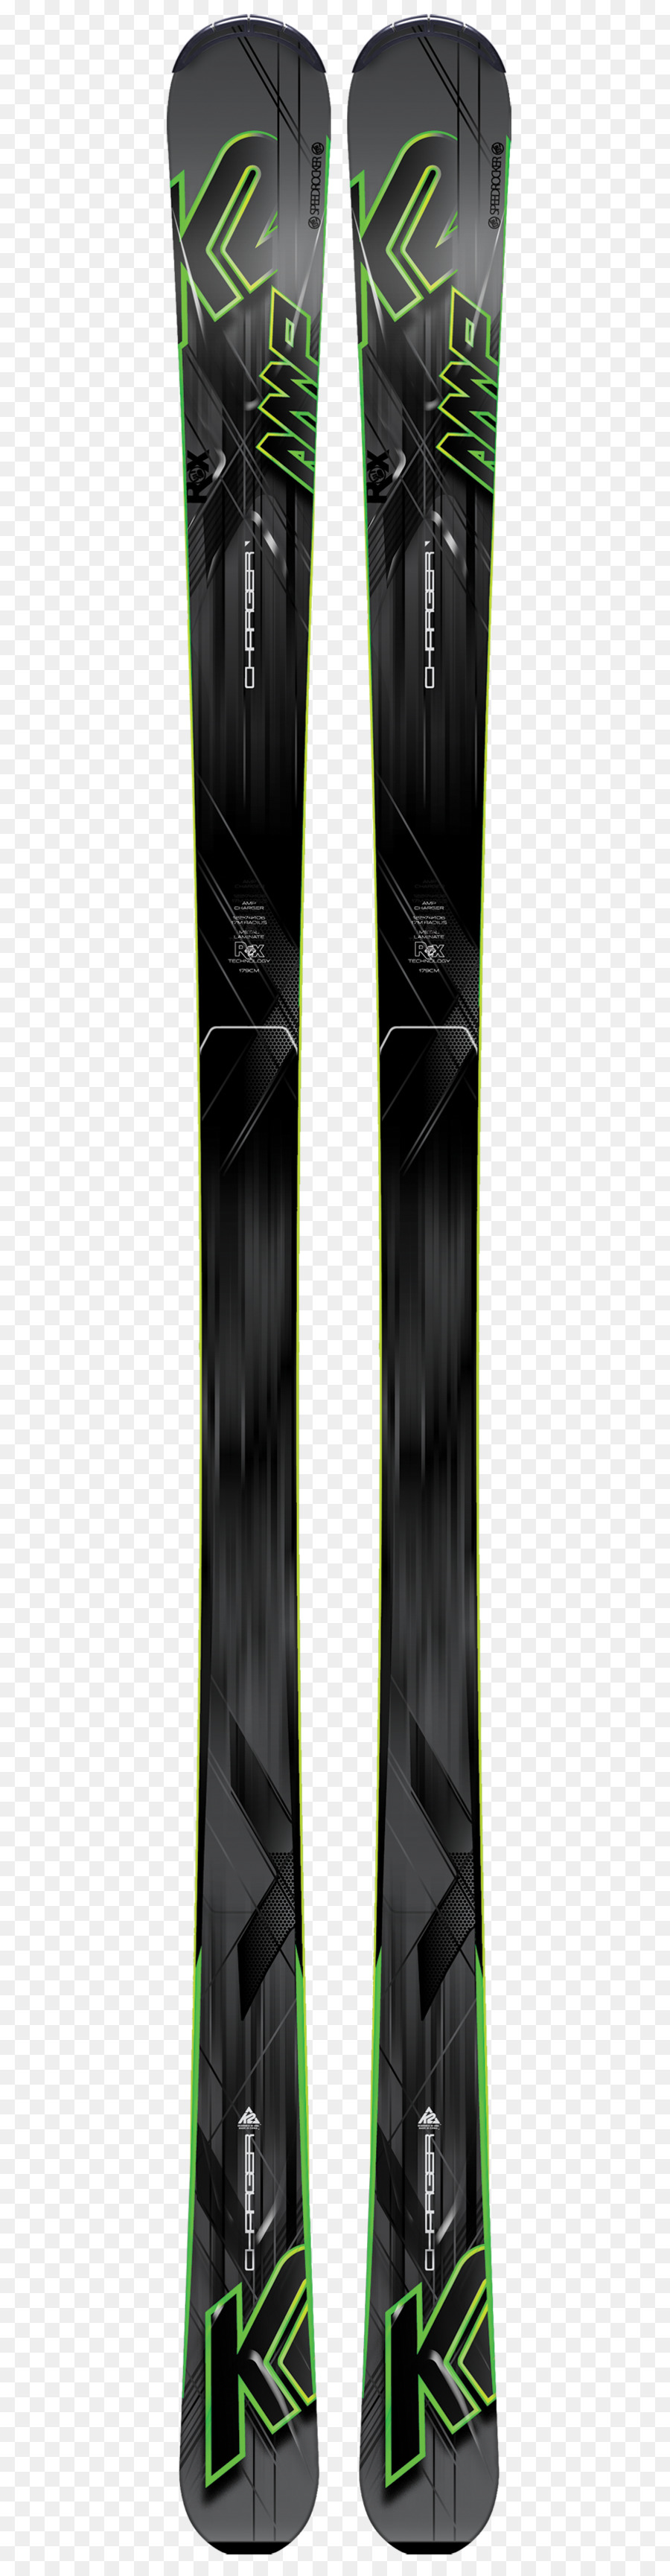 Sportartikel-Skiset K2 Sport Akku-Ladegerät - Skifahren